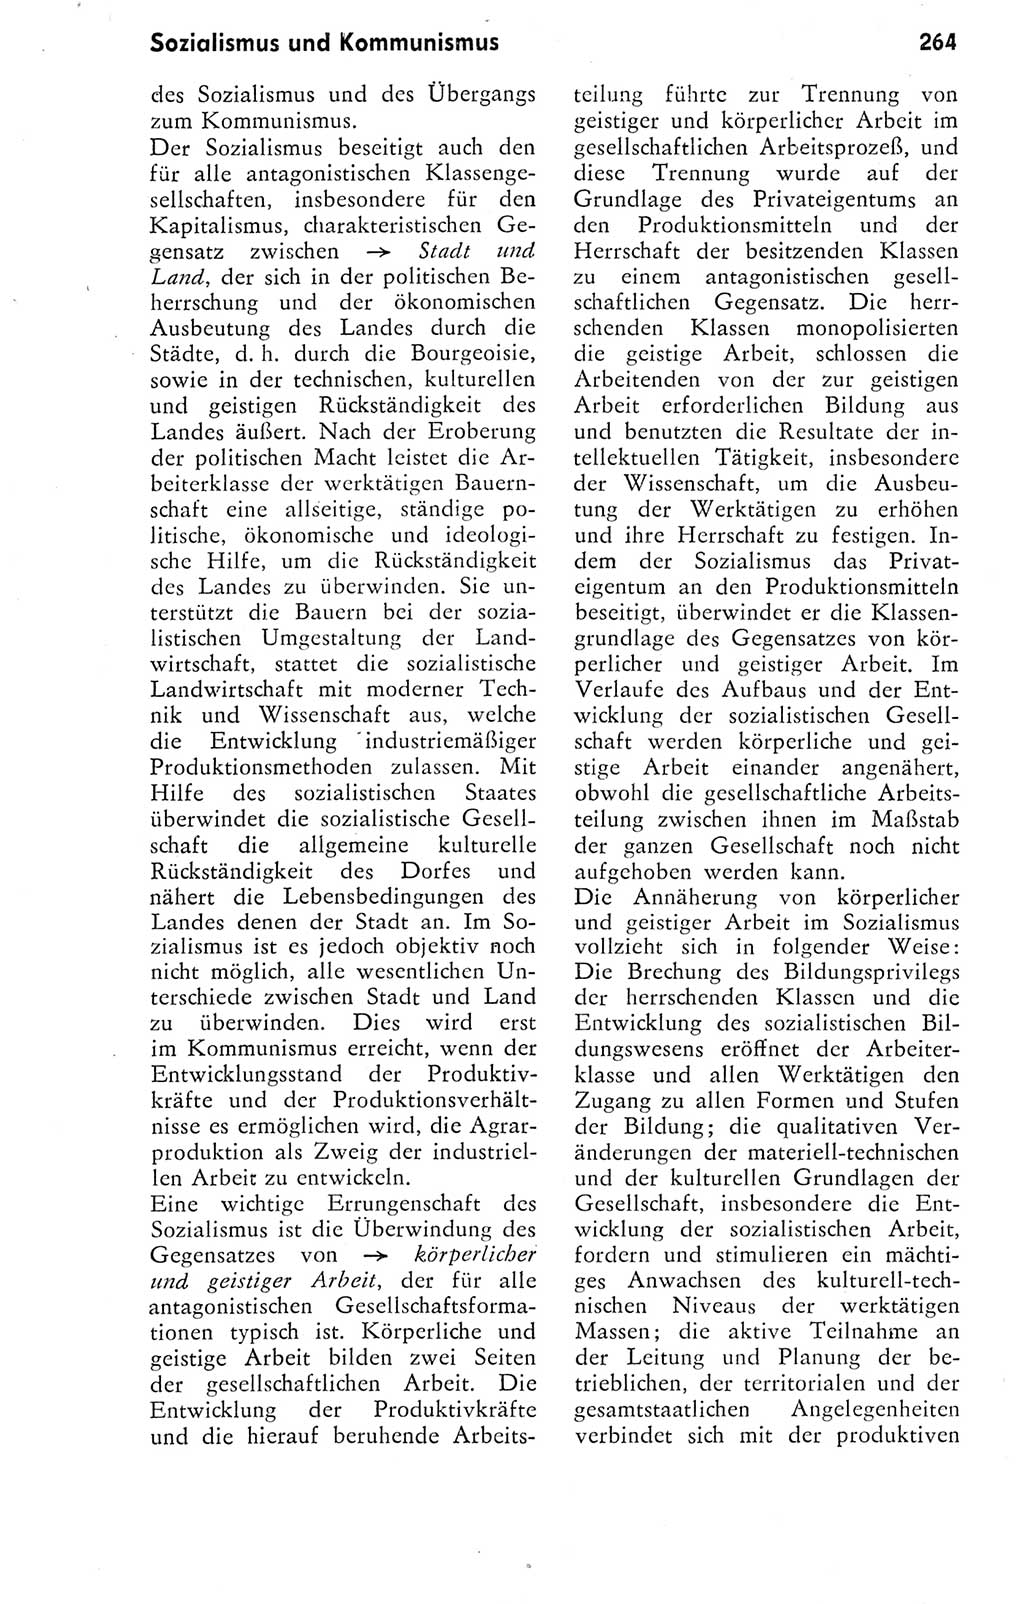 Kleines Wörterbuch der marxistisch-leninistischen Philosophie [Deutsche Demokratische Republik (DDR)] 1974, Seite 264 (Kl. Wb. ML Phil. DDR 1974, S. 264)